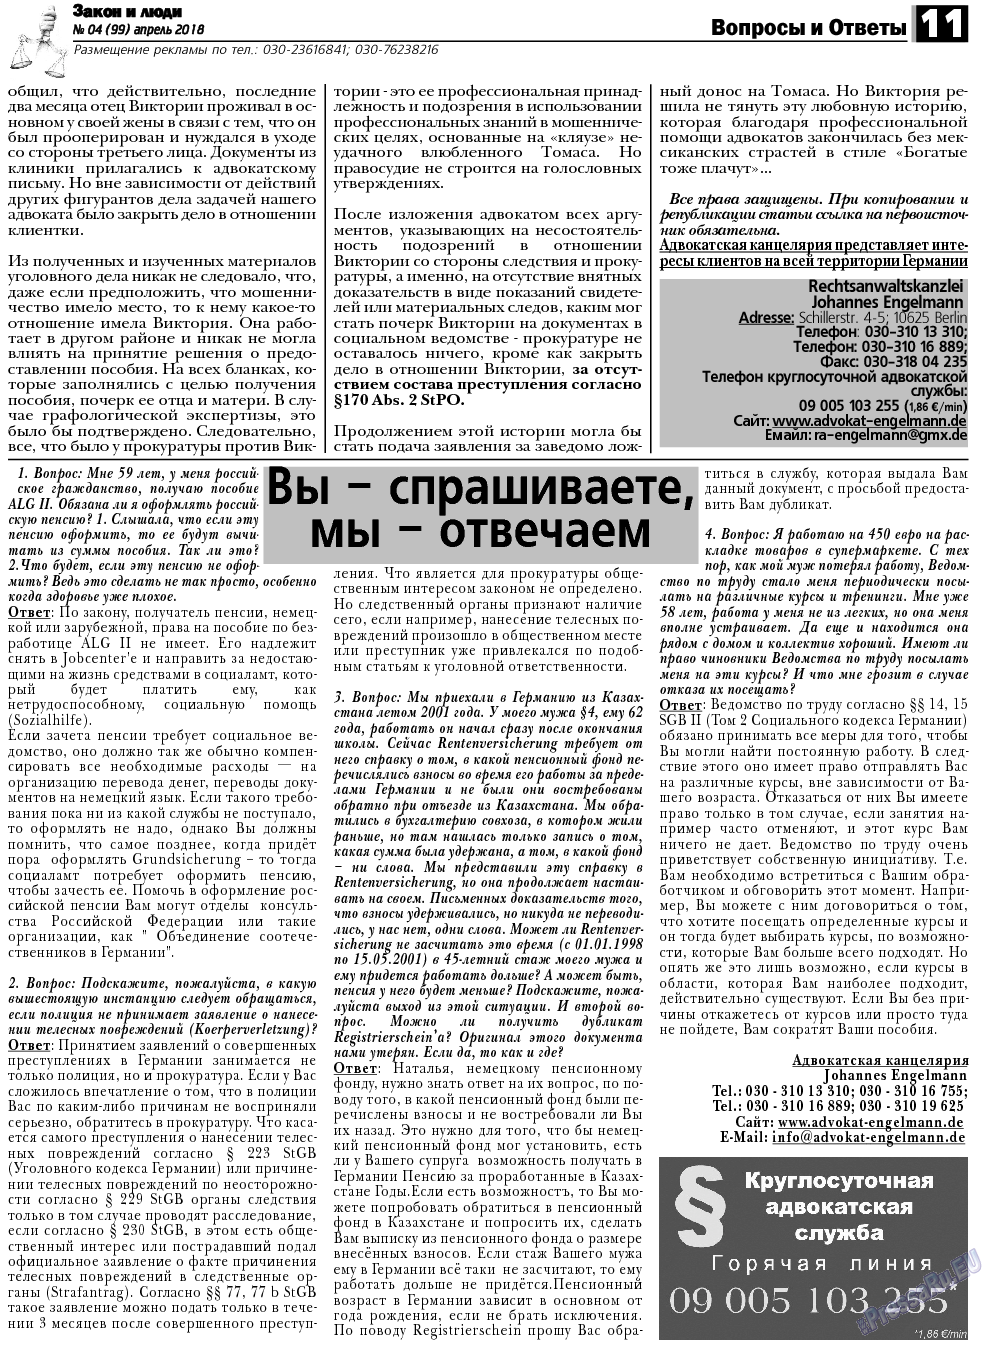 Закон и люди, газета. 2018 №4 стр.11